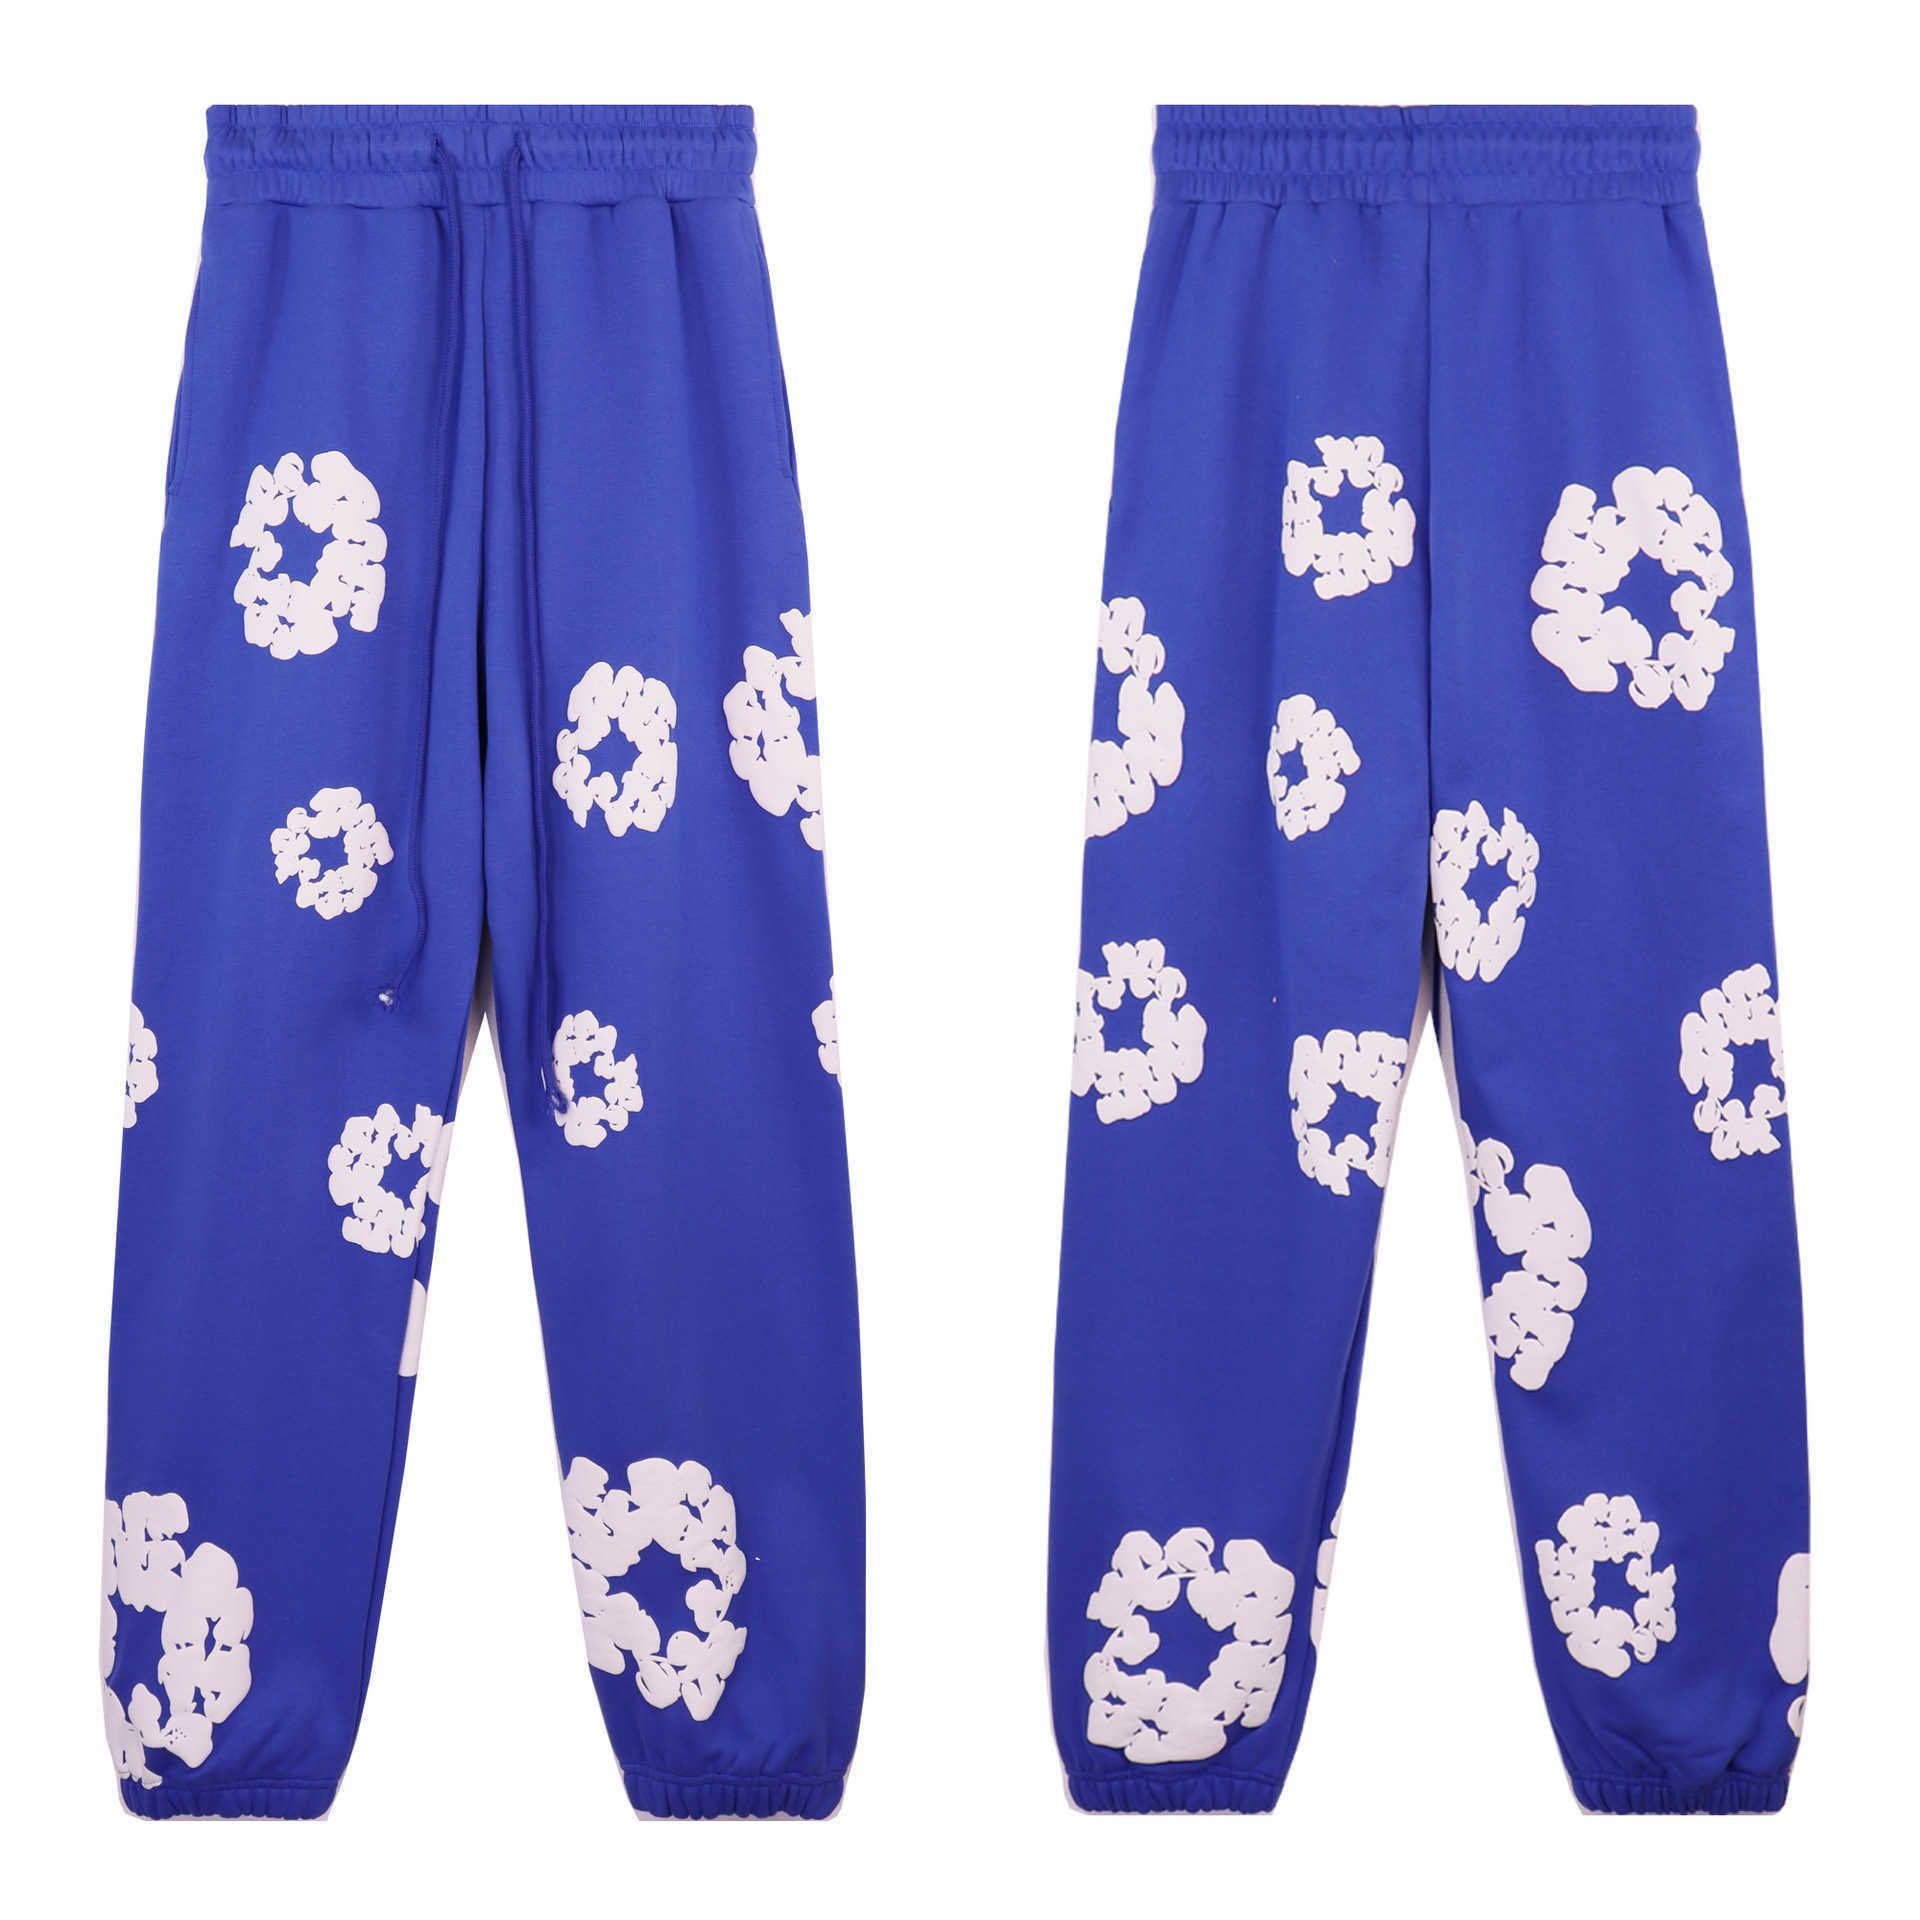 8155 Colorful Blue Pants